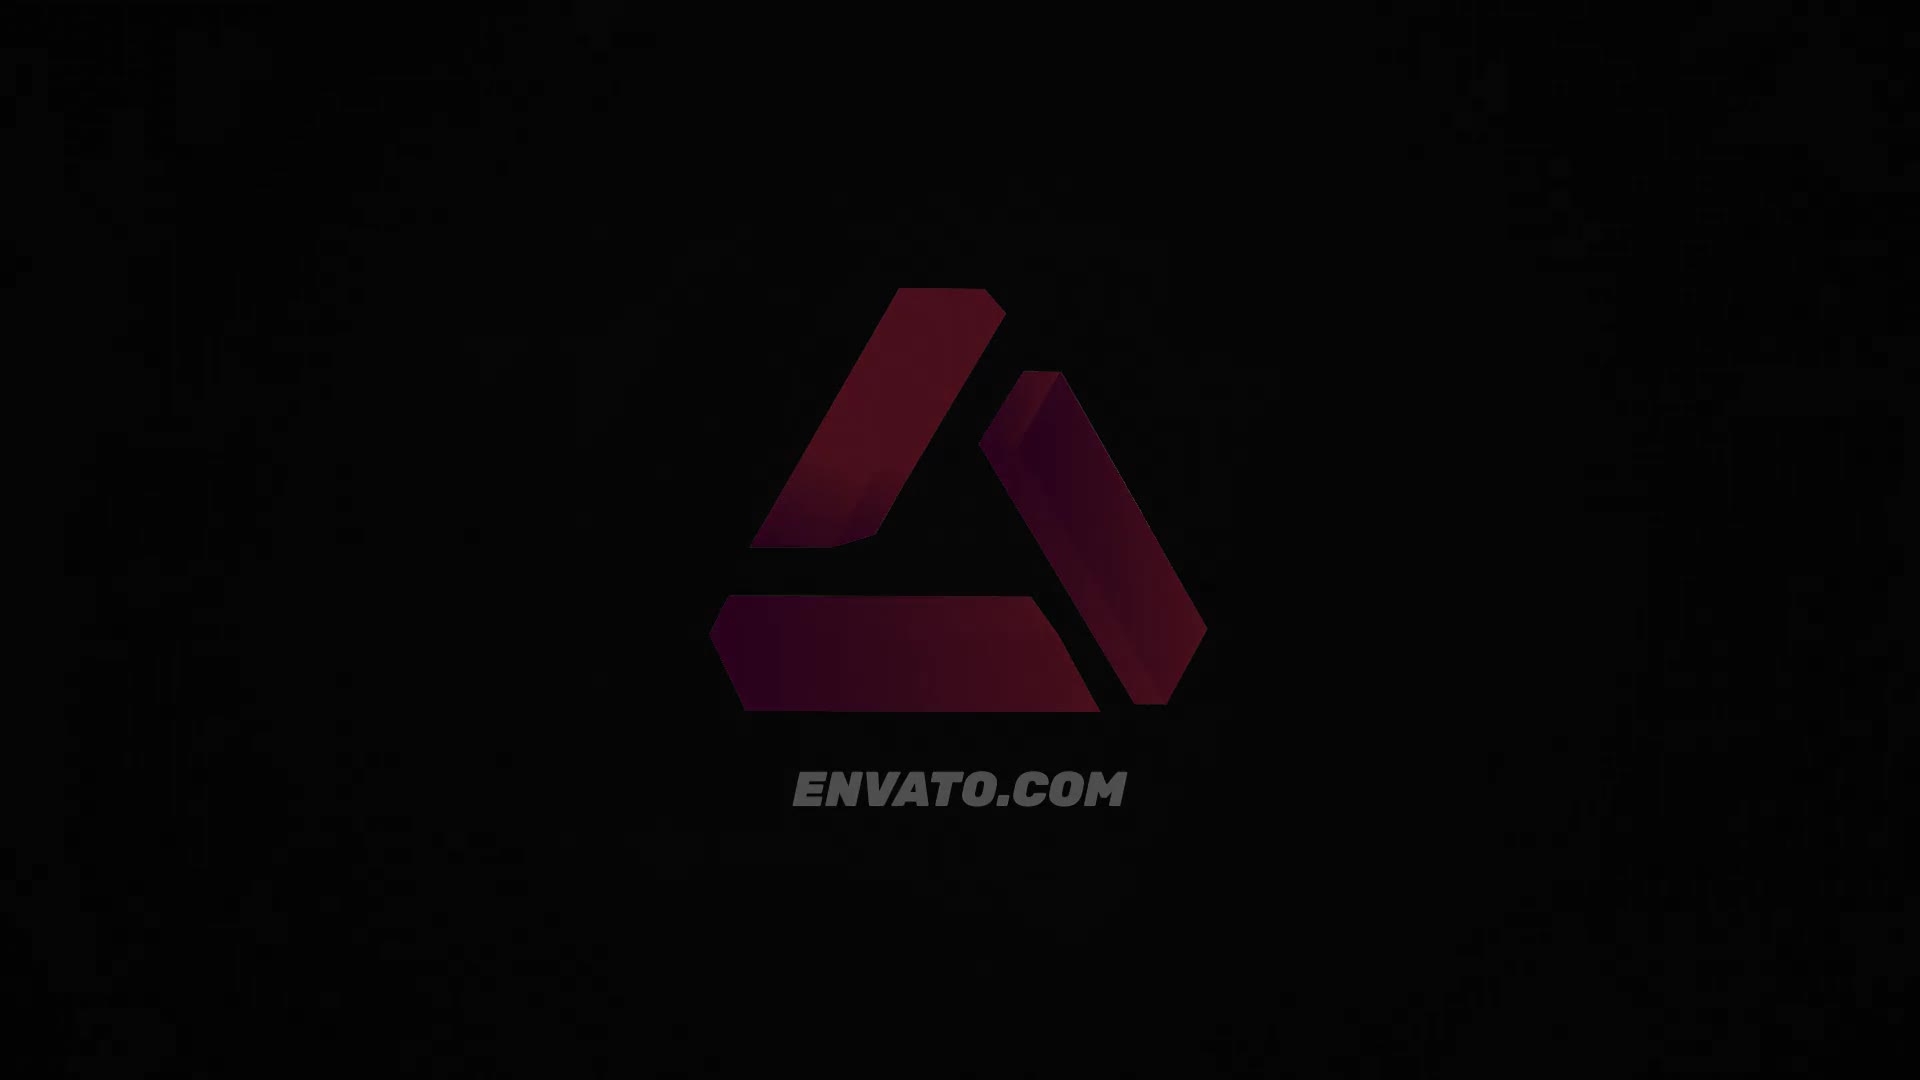 Futuristic Abstract Logo | Mogrt Videohive 33893204 Premiere Pro Image 3